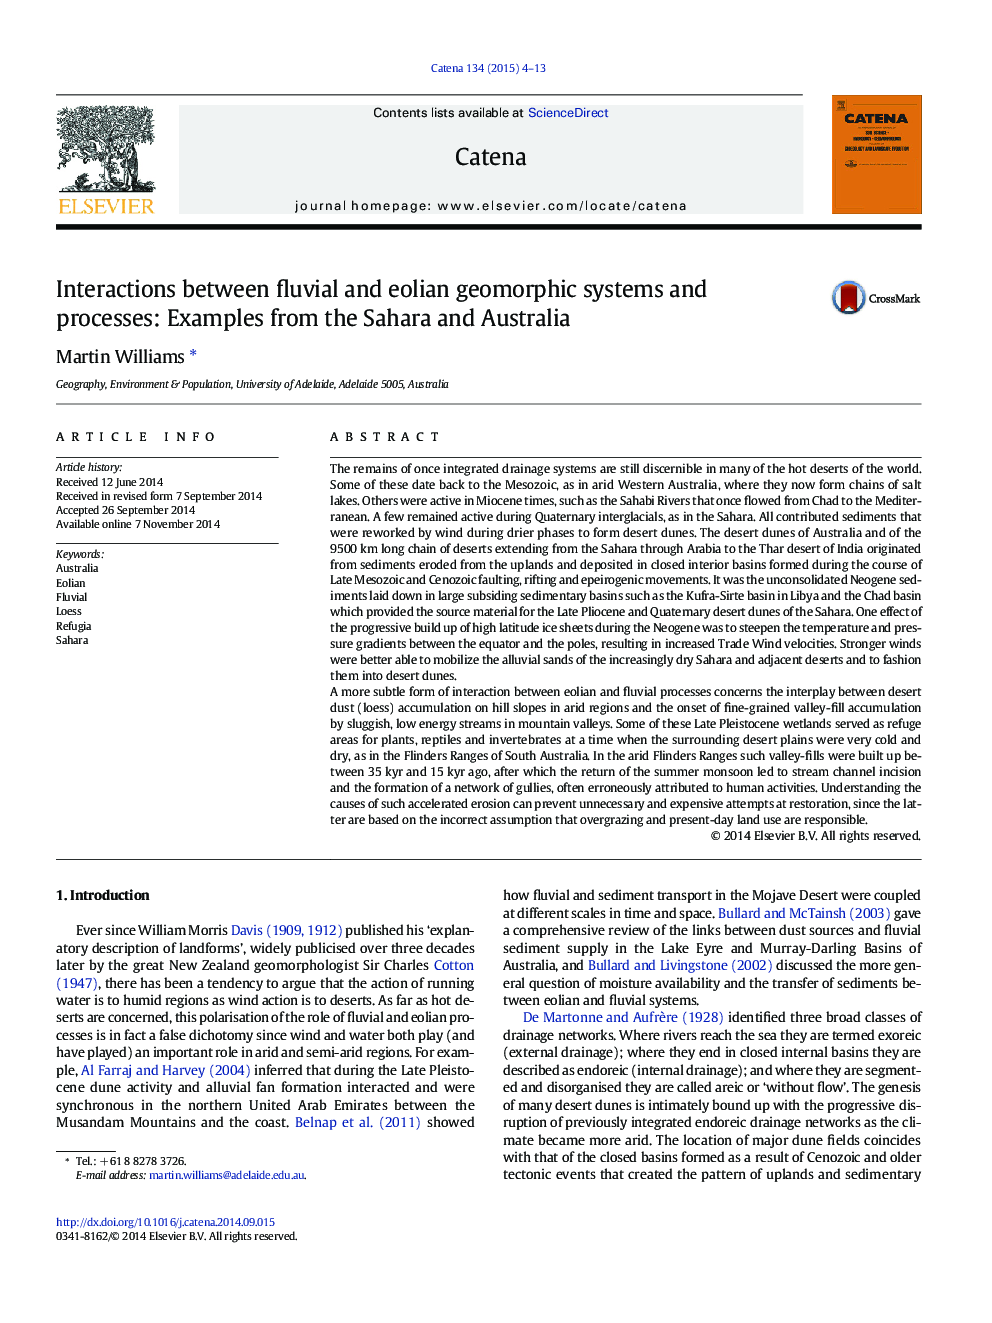 تعاملات بین سیستم ها و فرآیندهای ژئومورفیک رودخانه ای و ائولین: نمونه هایی از صحرا و استرالیا 